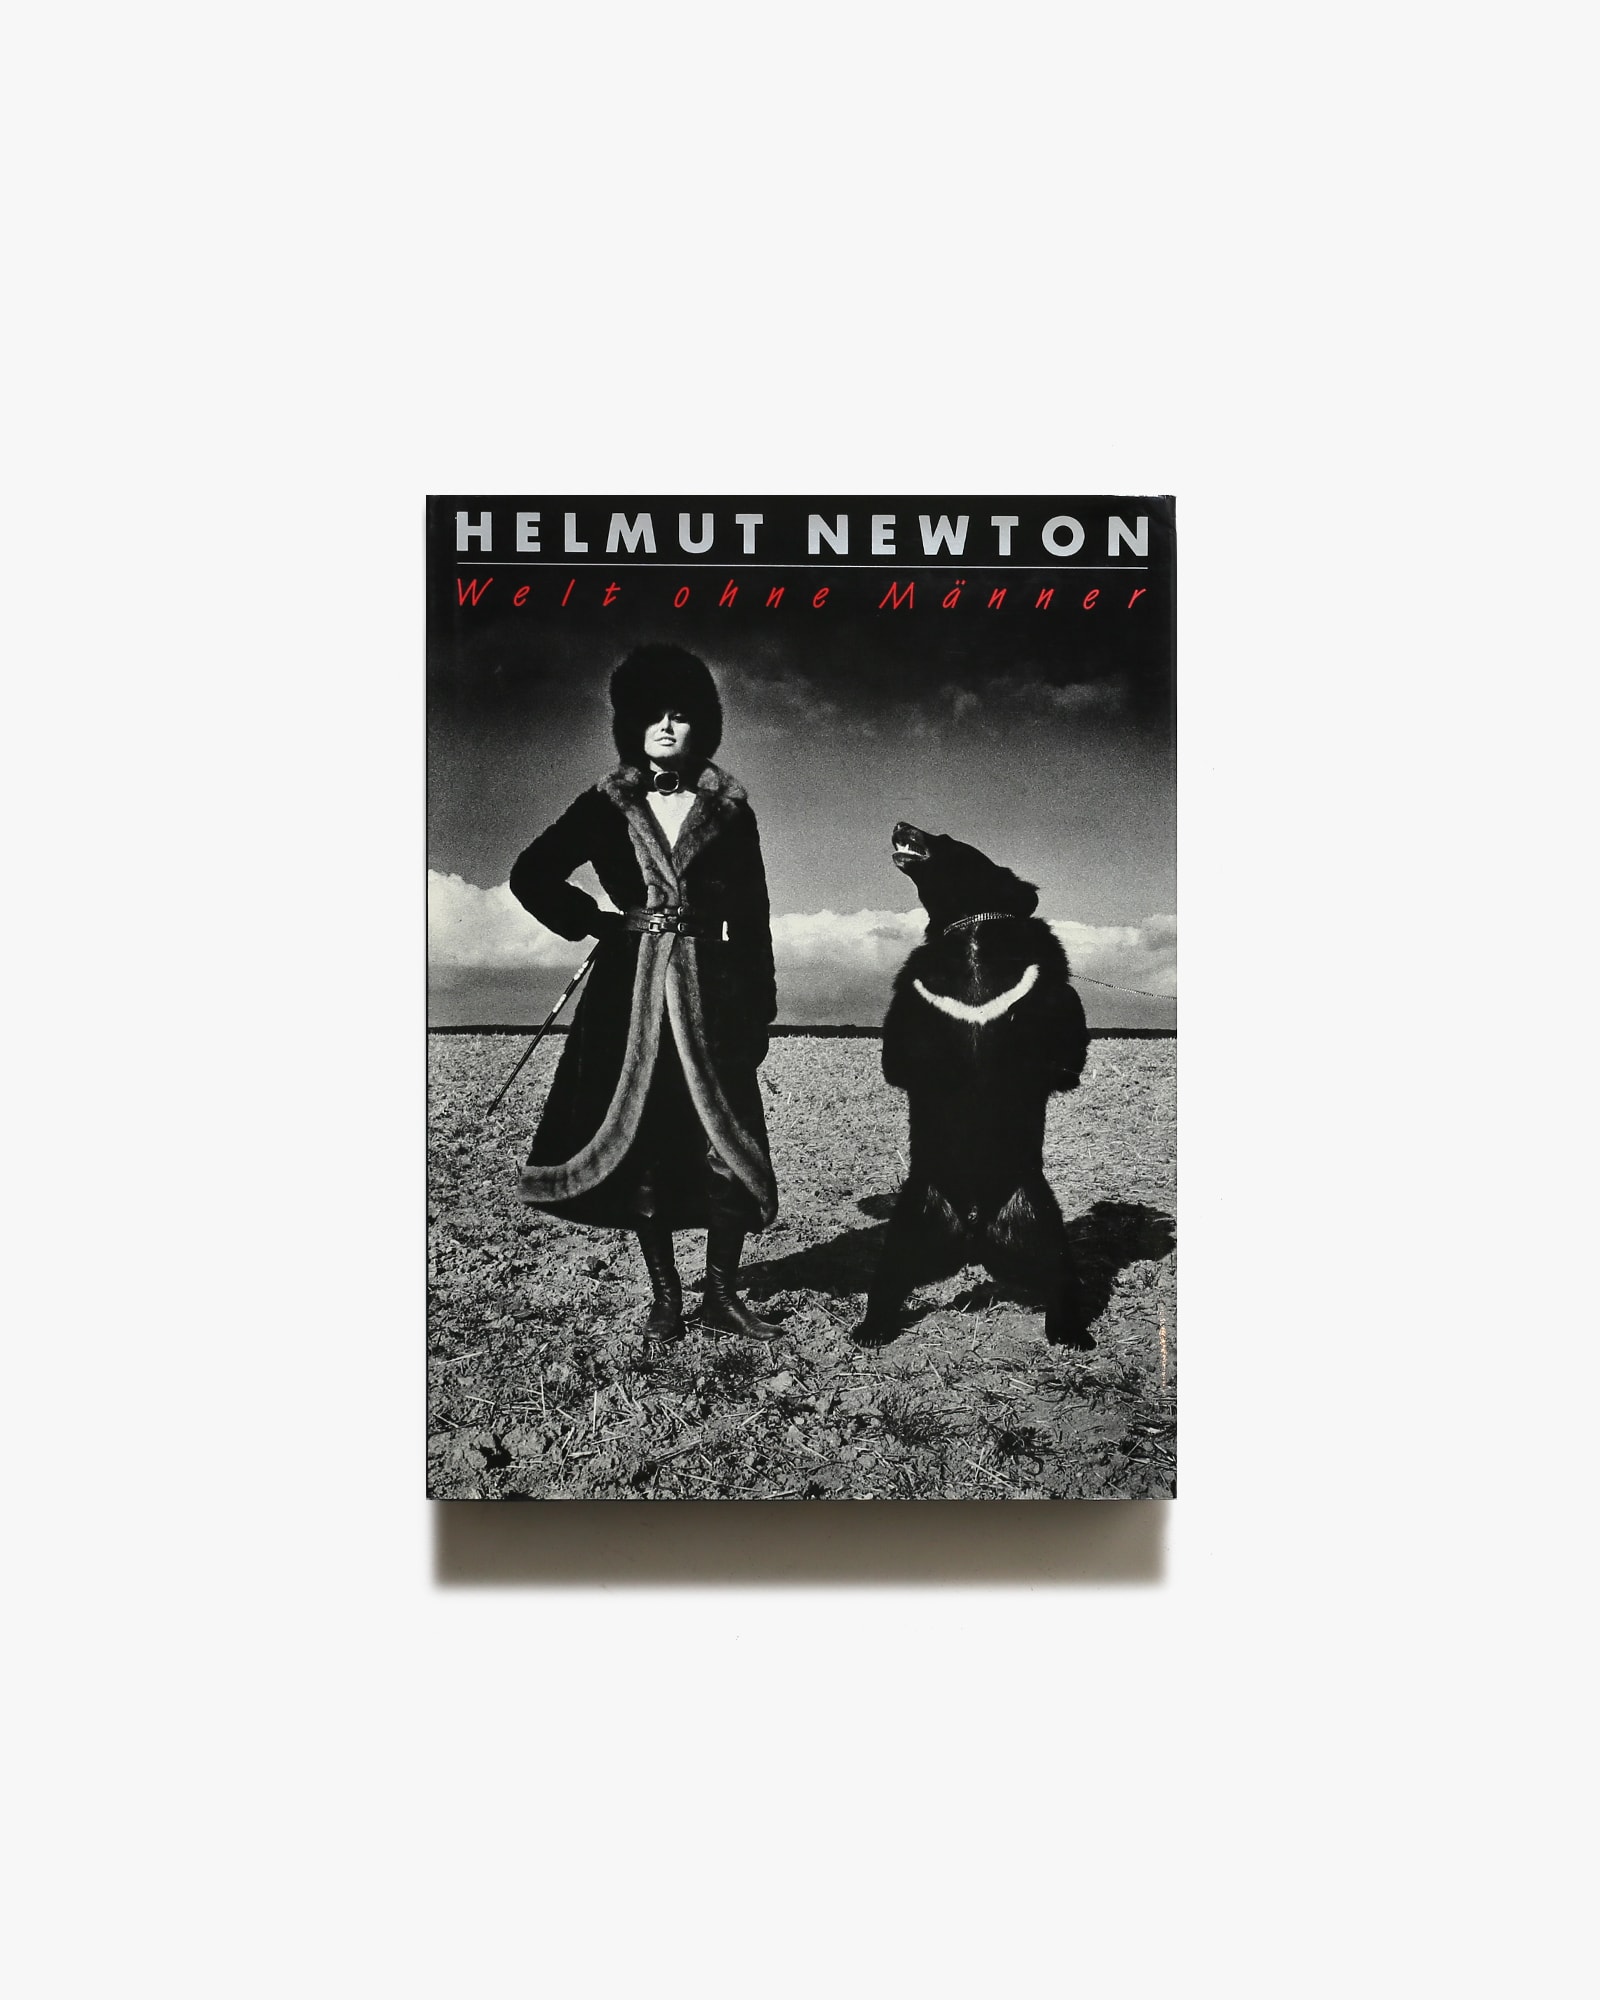 Helmut Newton: Welt ohne Manner